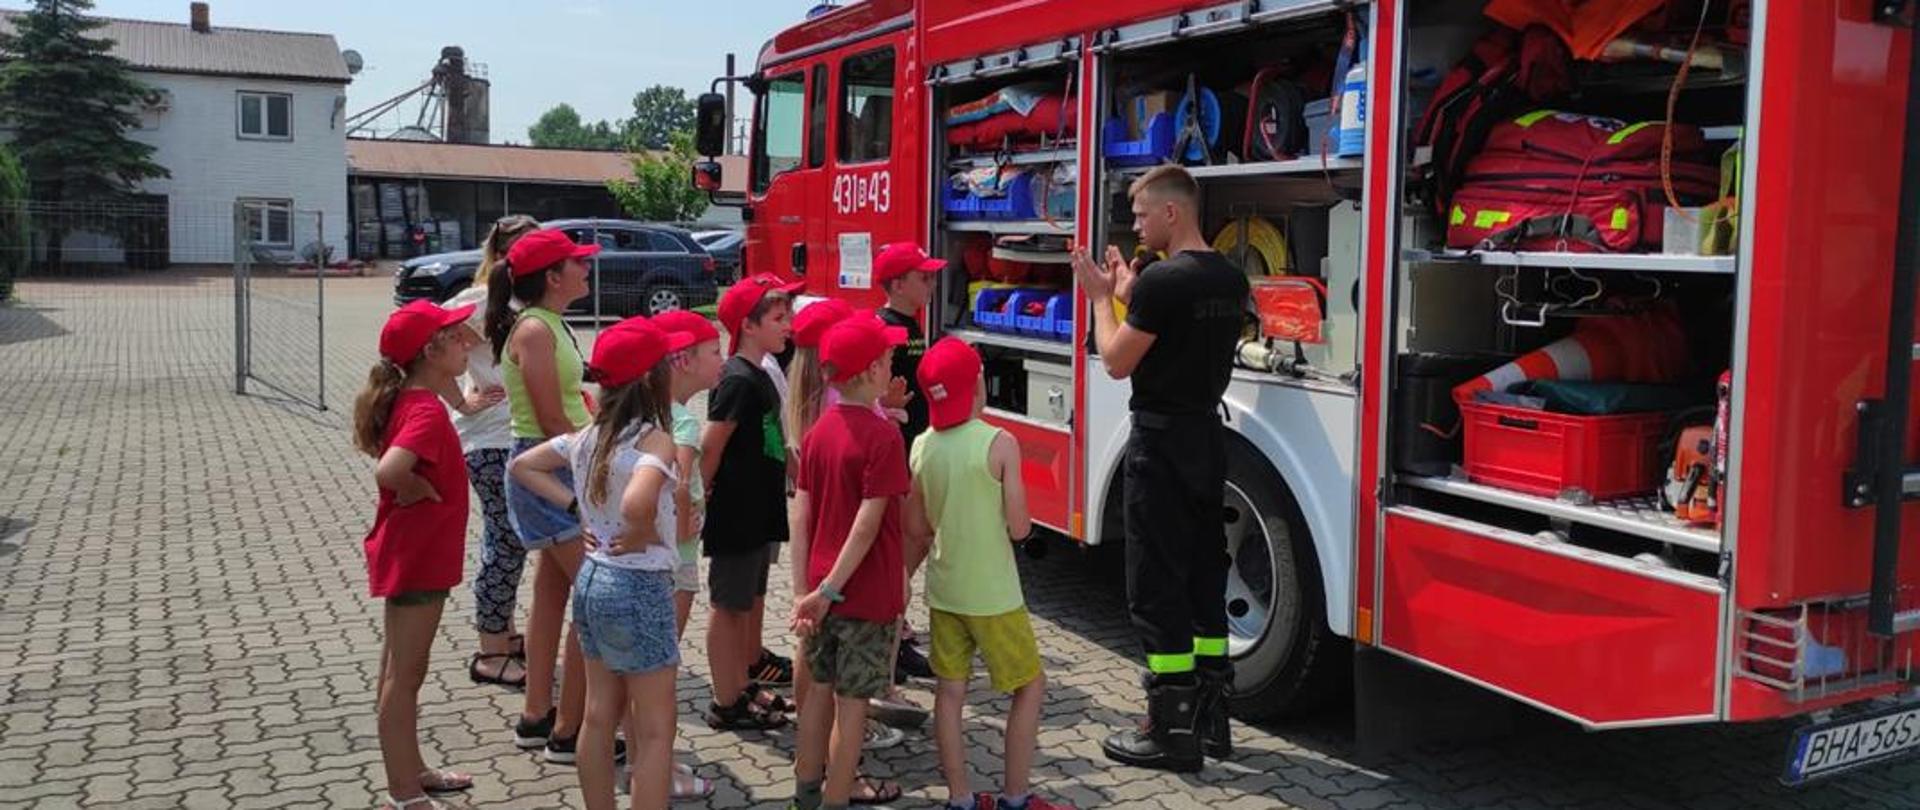 Strażak stojący przy samochodzie pożarniczym pokazuje dzieciom jego wyposażenie.